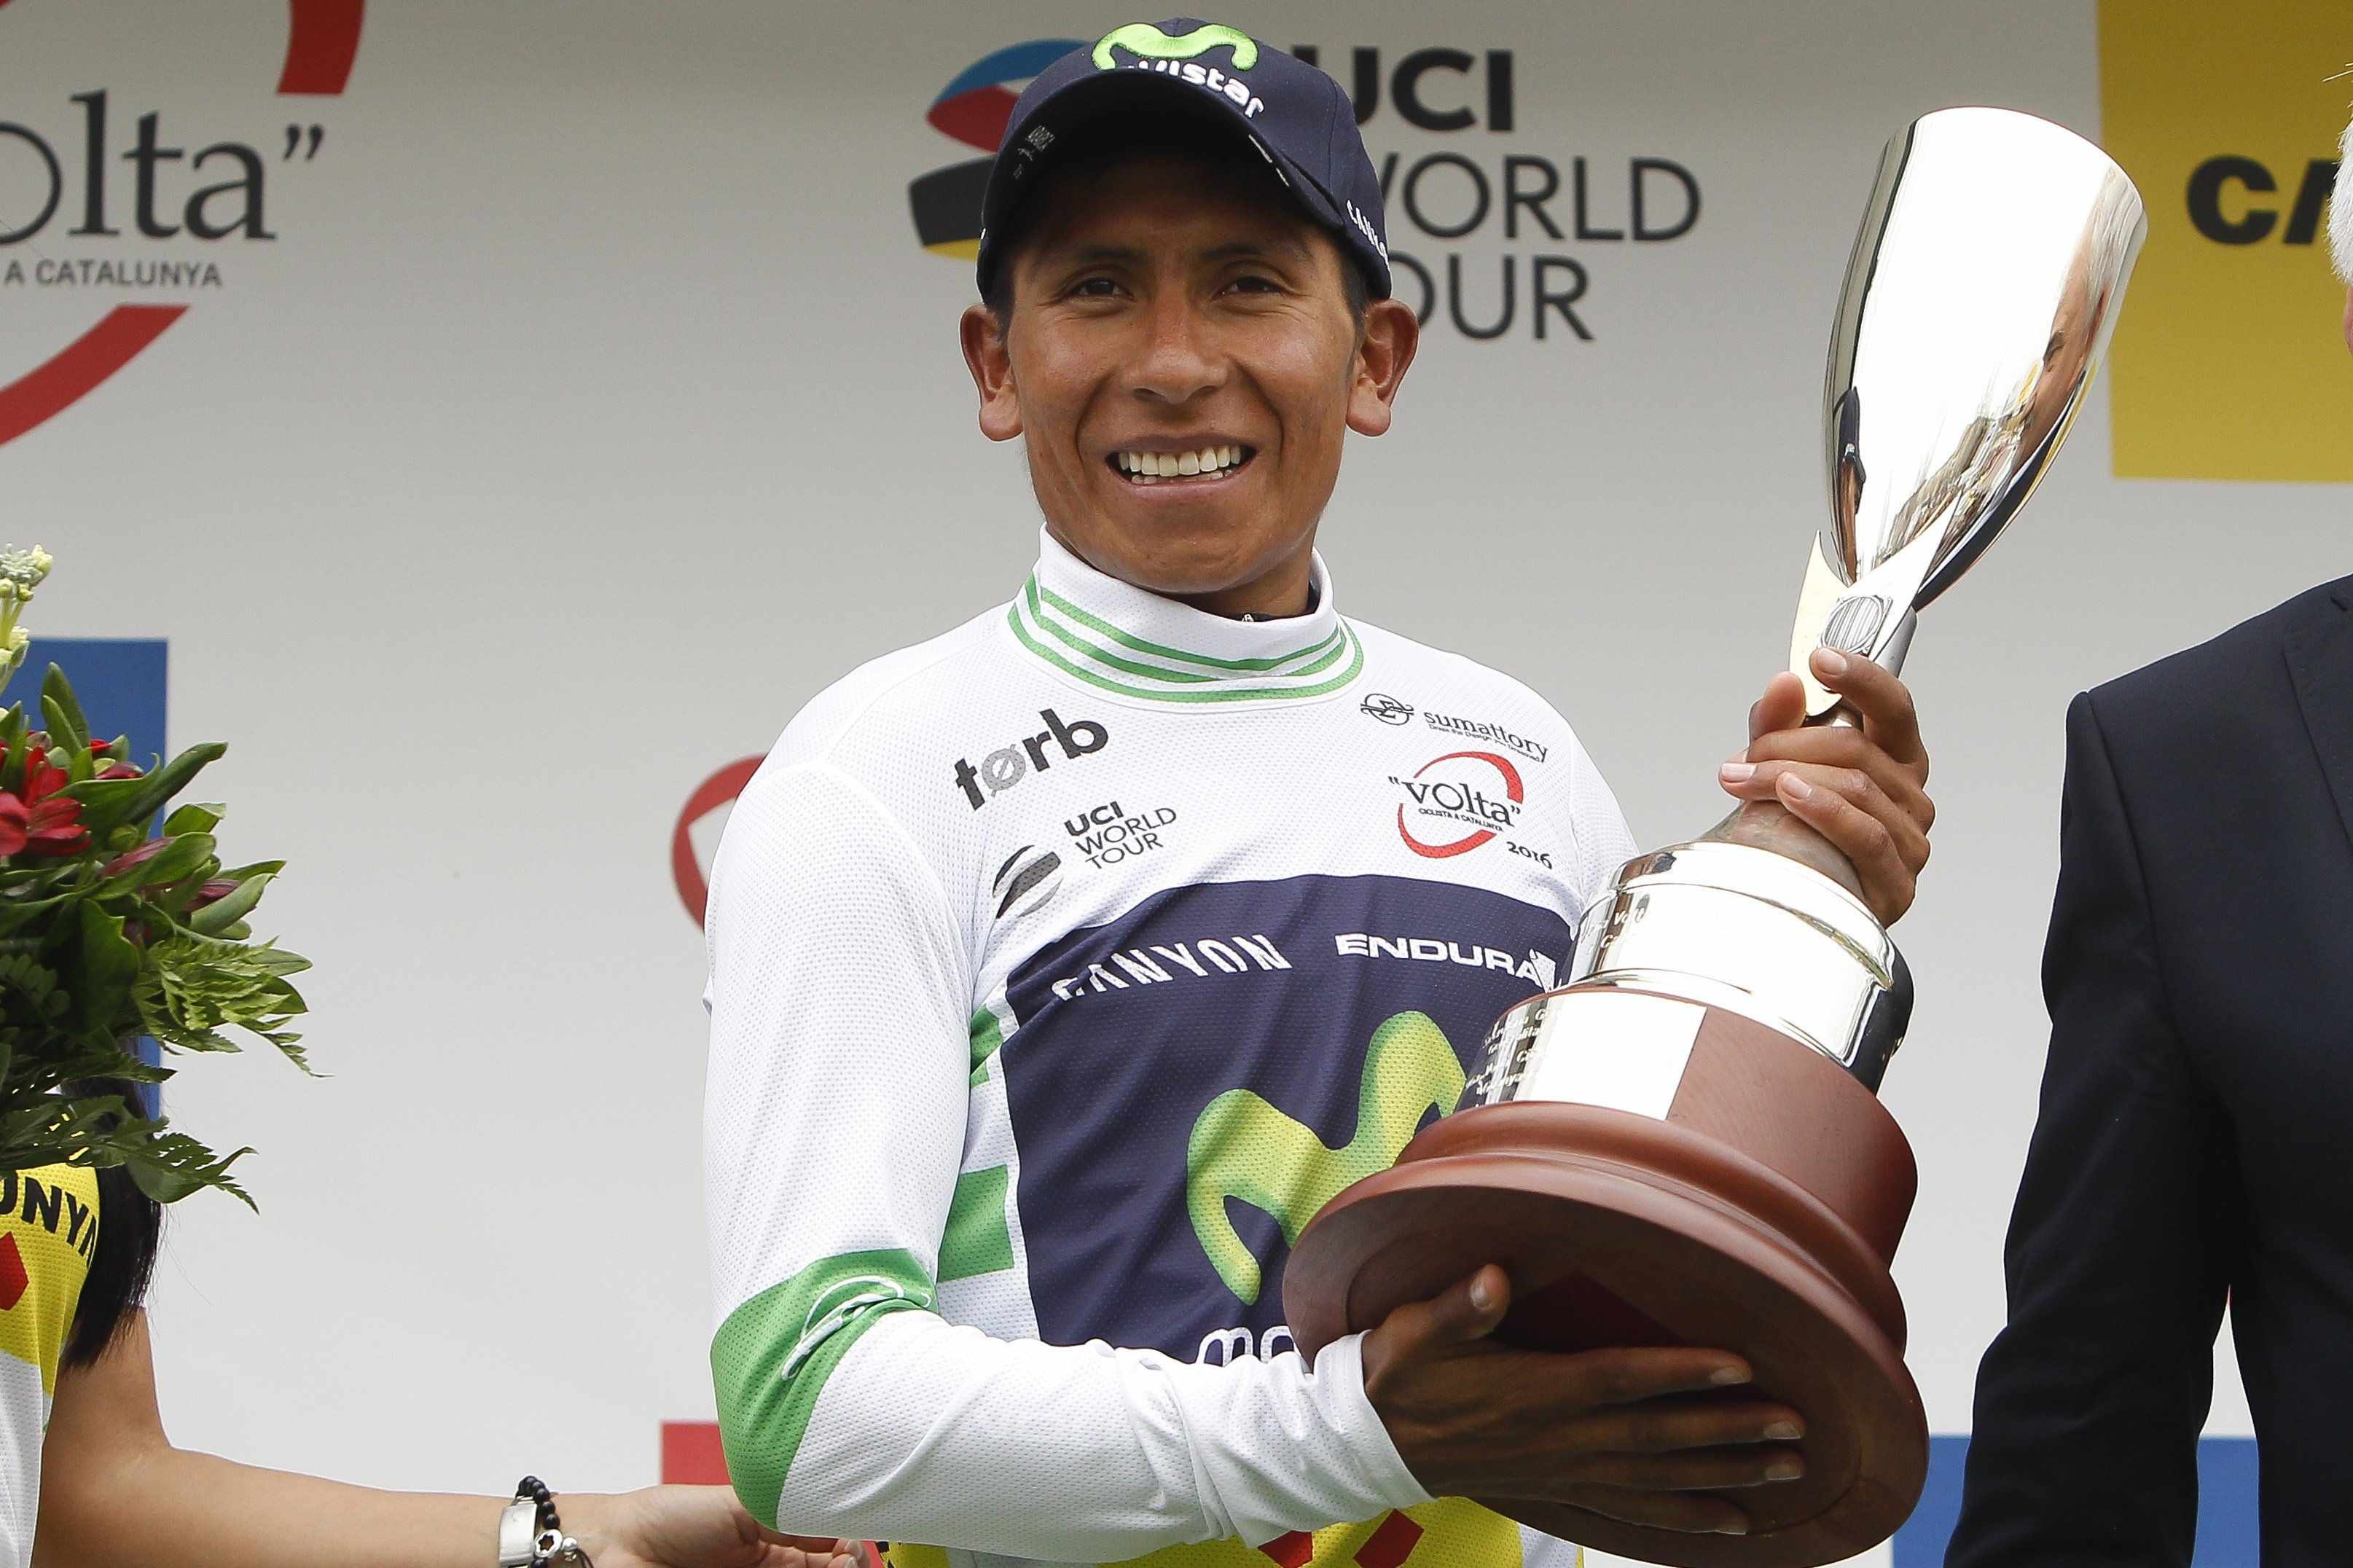 Un pletòric Quintana s'imposa a la Volta a Catalunya